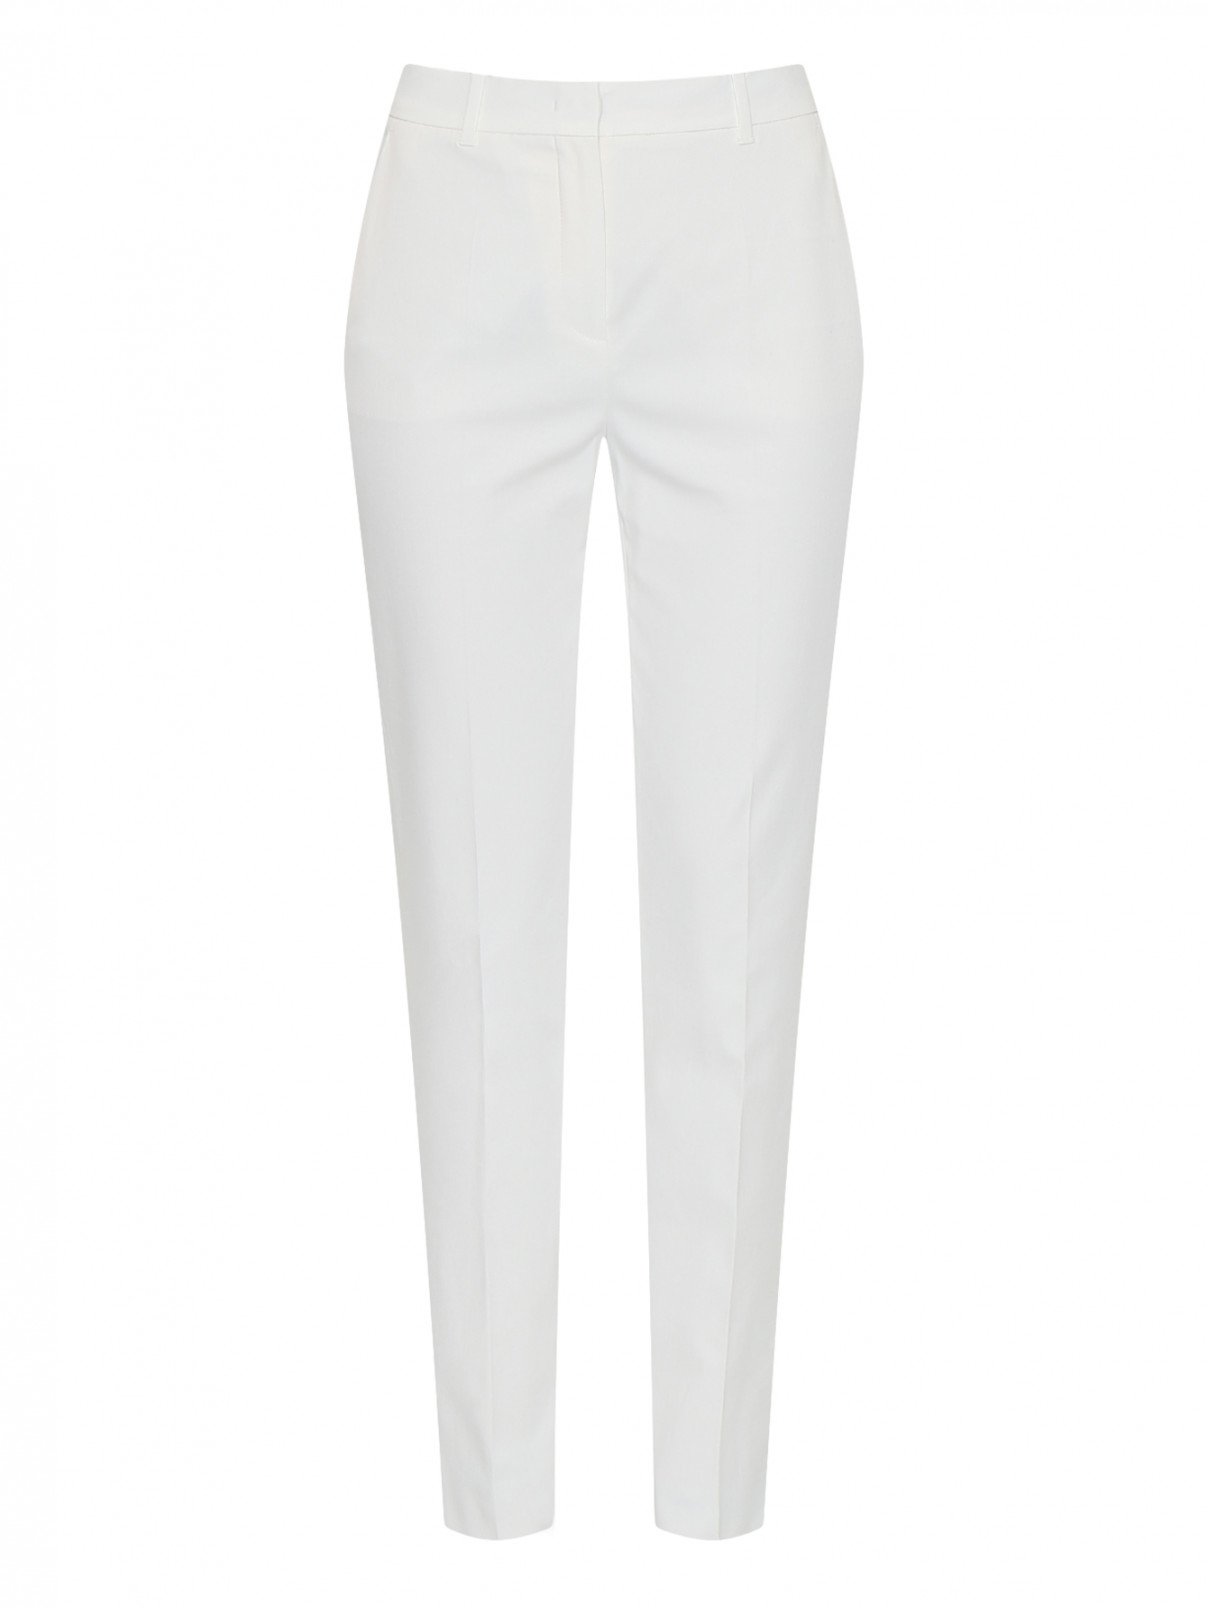 Укороченные брюки из хлопка Max Mara  –  Общий вид  – Цвет:  Белый